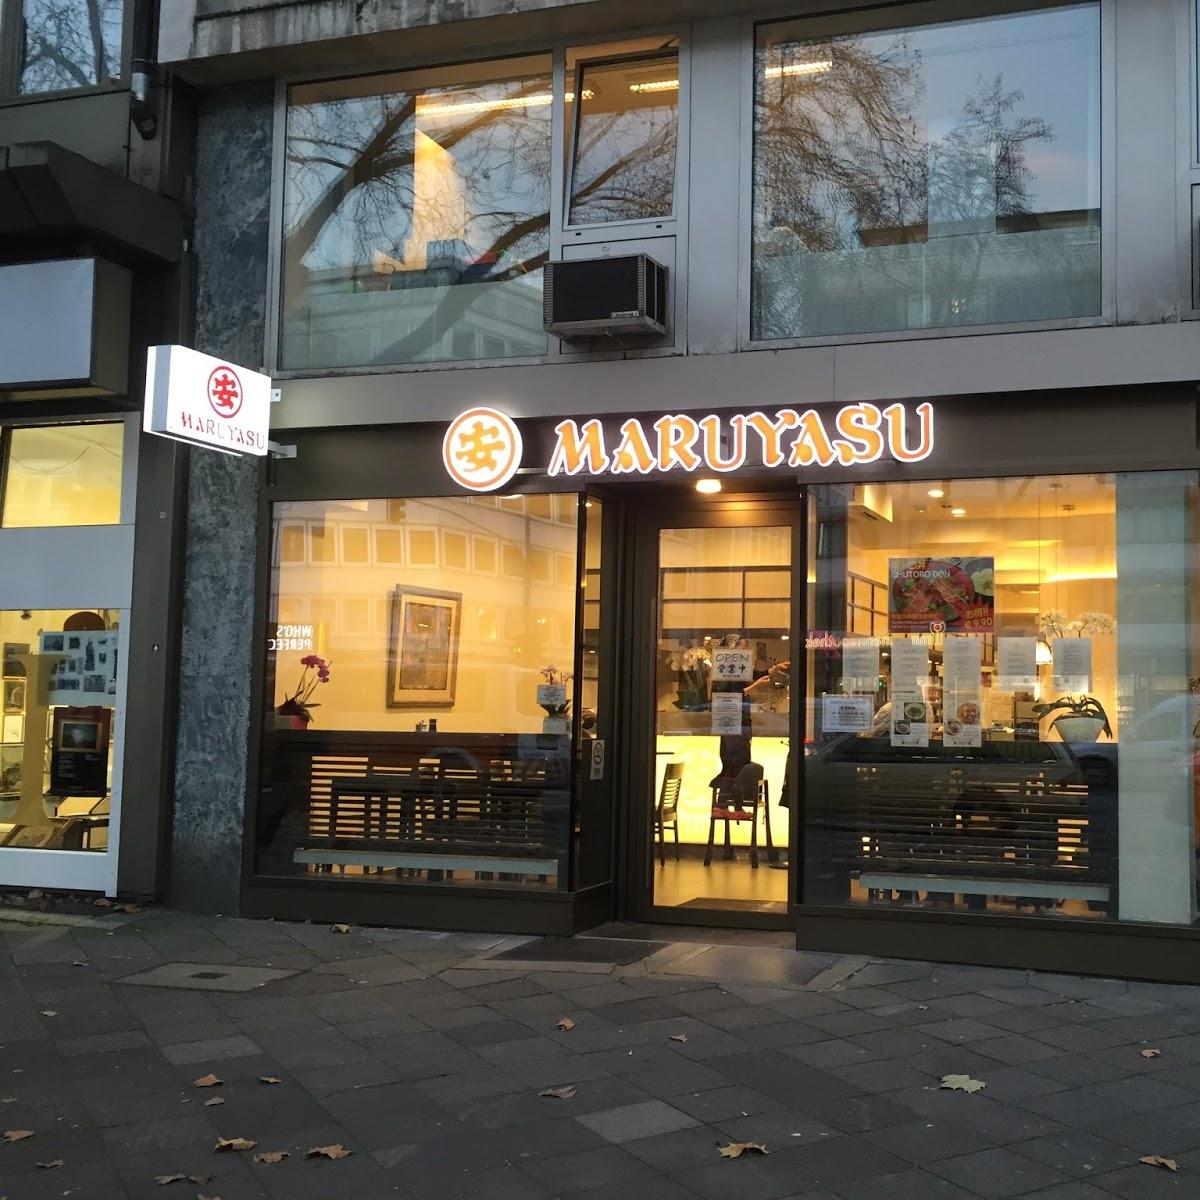 Restaurant "Maruyasu Immermann" in Düsseldorf